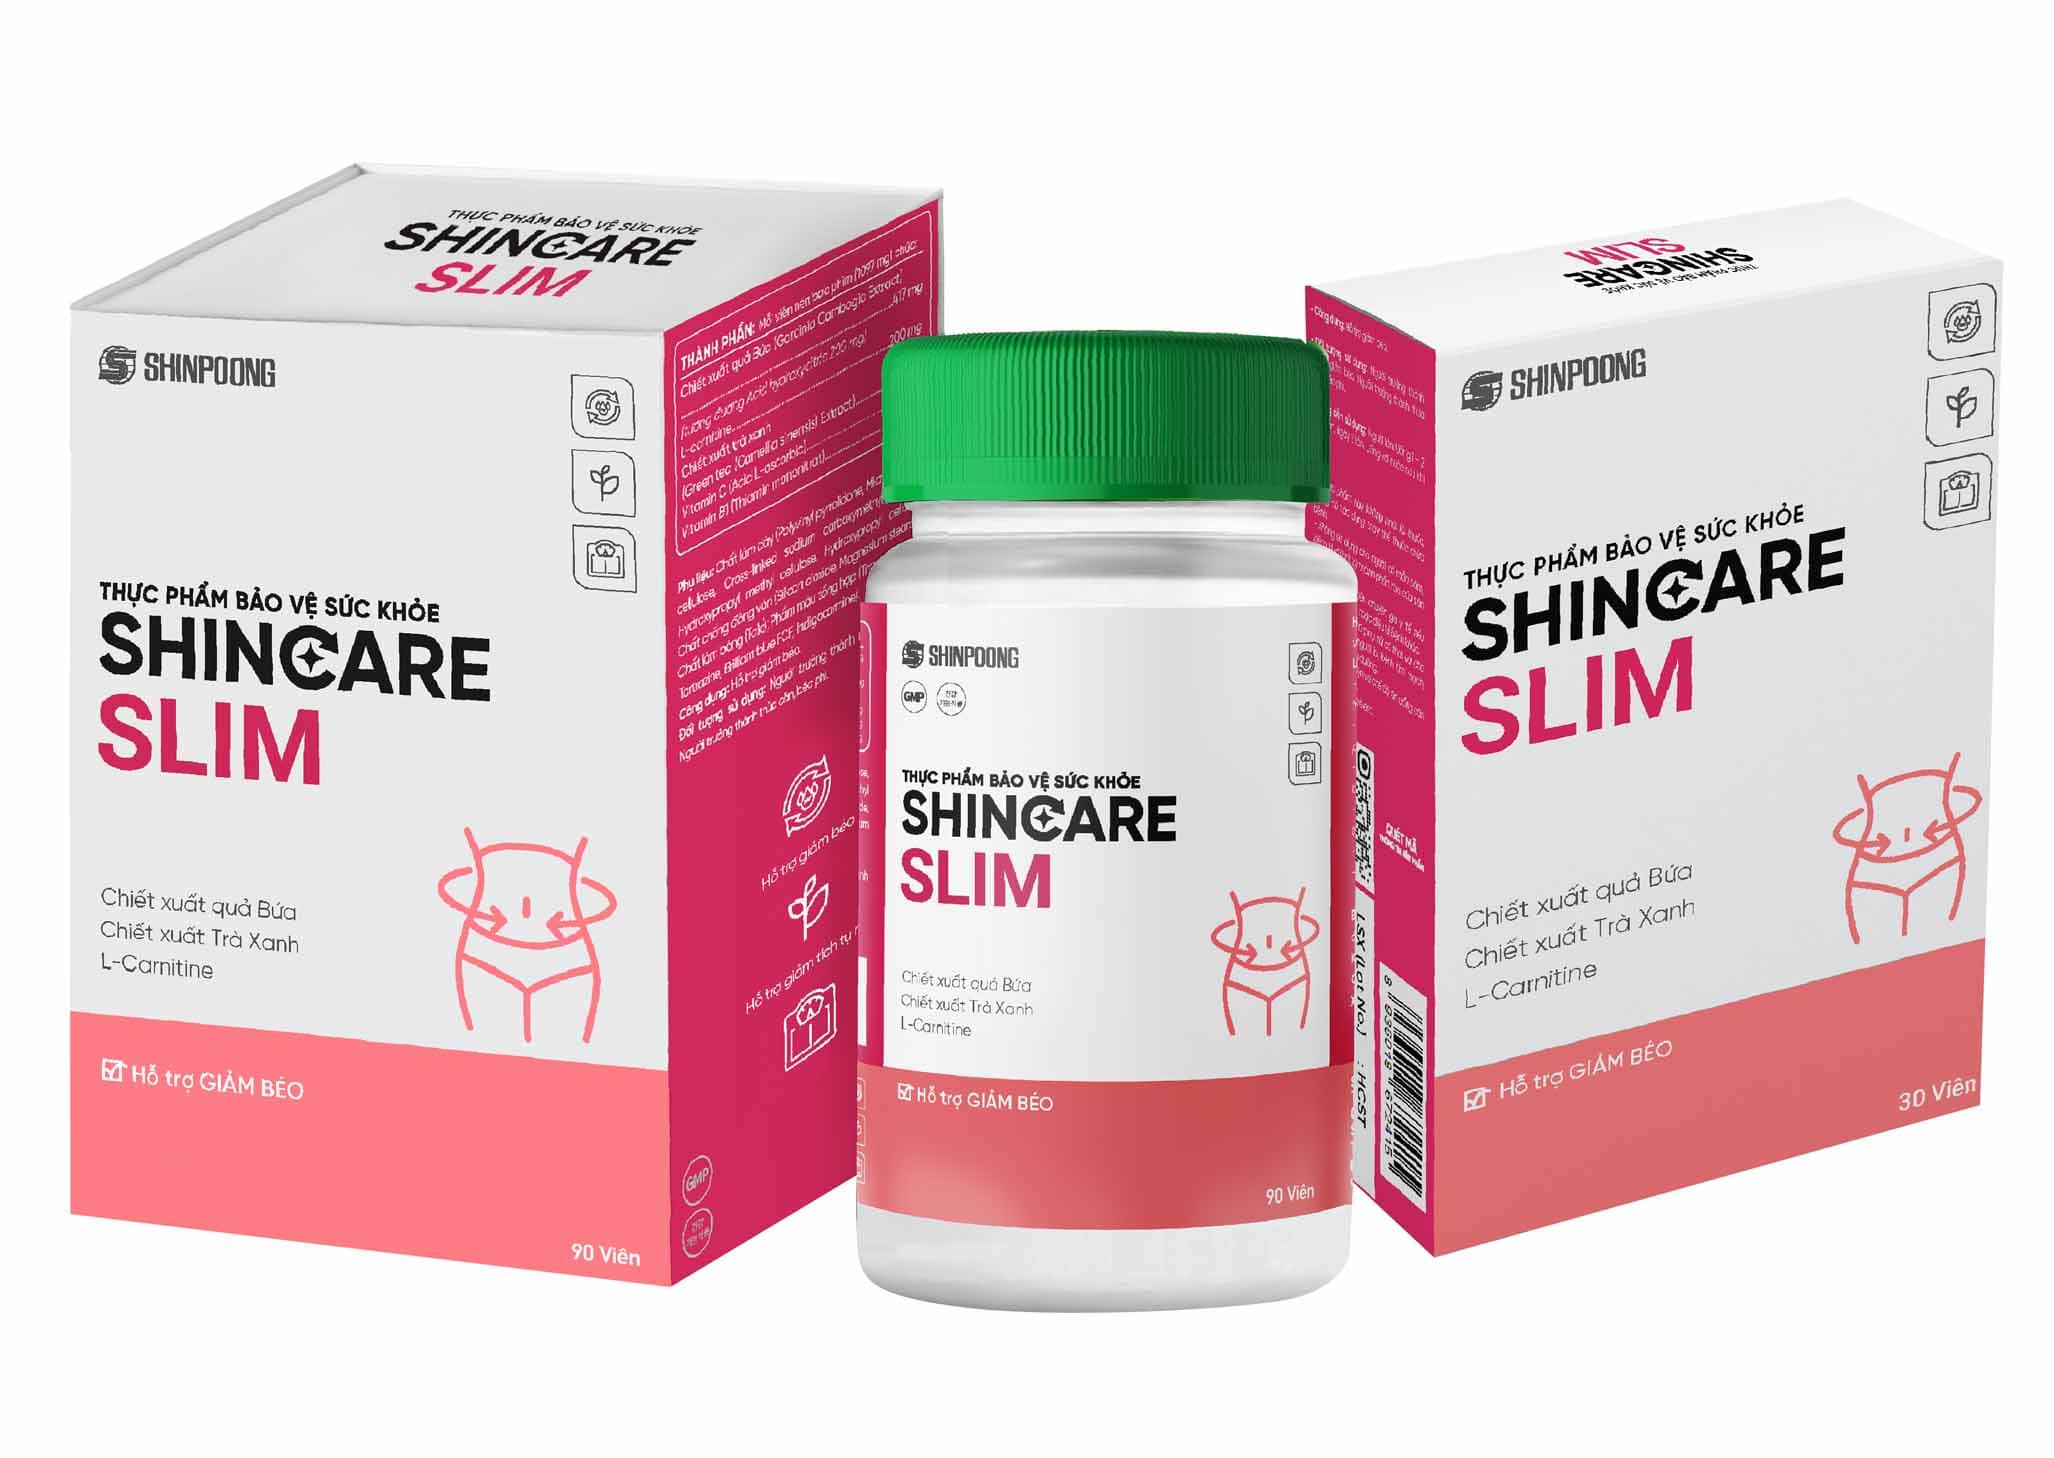 Viên uống Shincare Slim - Hỗ trợ giảm hấp thu chất béo, kiểm soát cân nặng - Hộp 90 viên